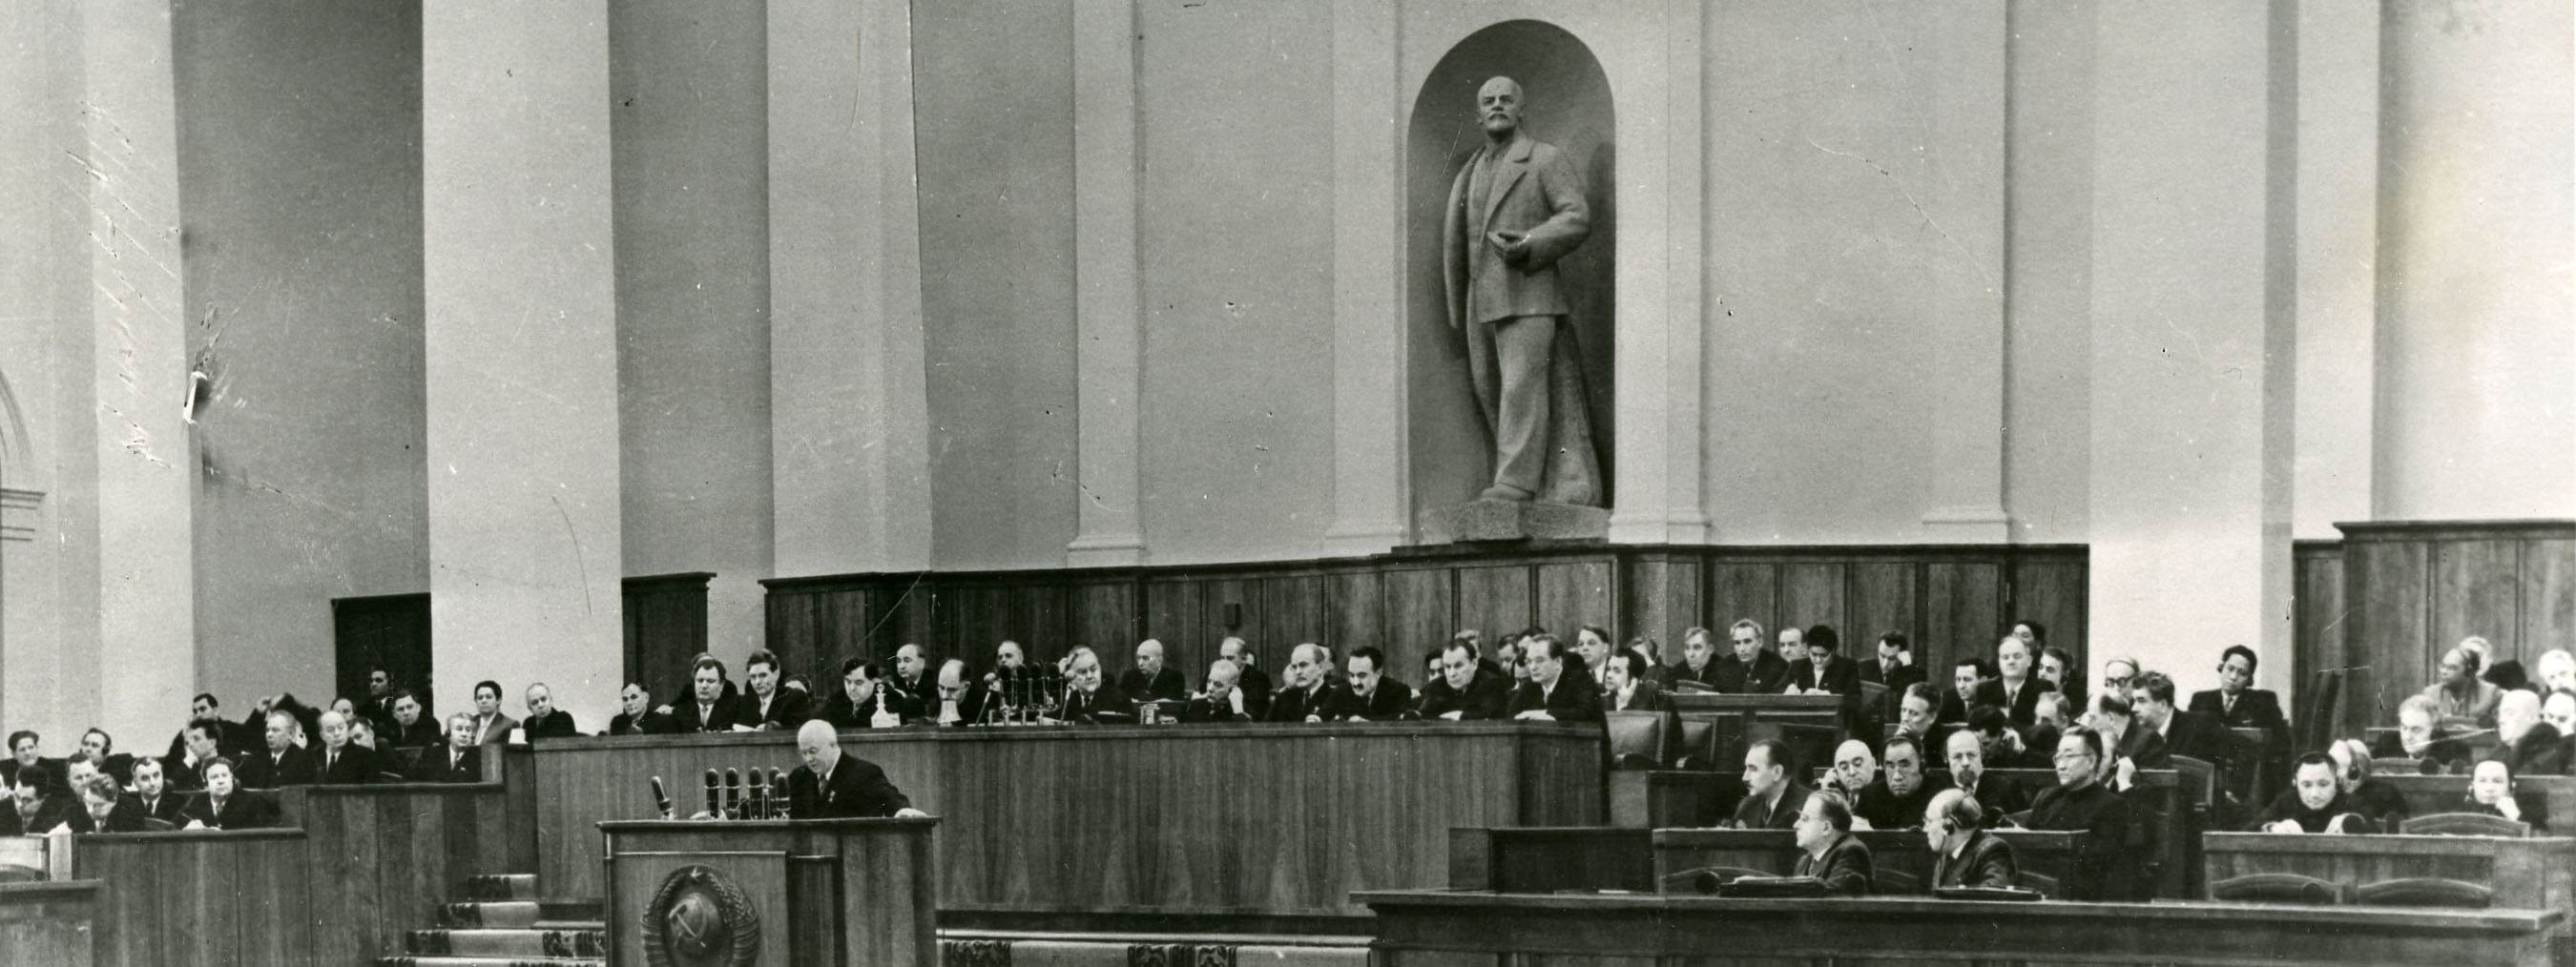 Выступление Н.С. Хрущева на открытии XX съезда КПСС